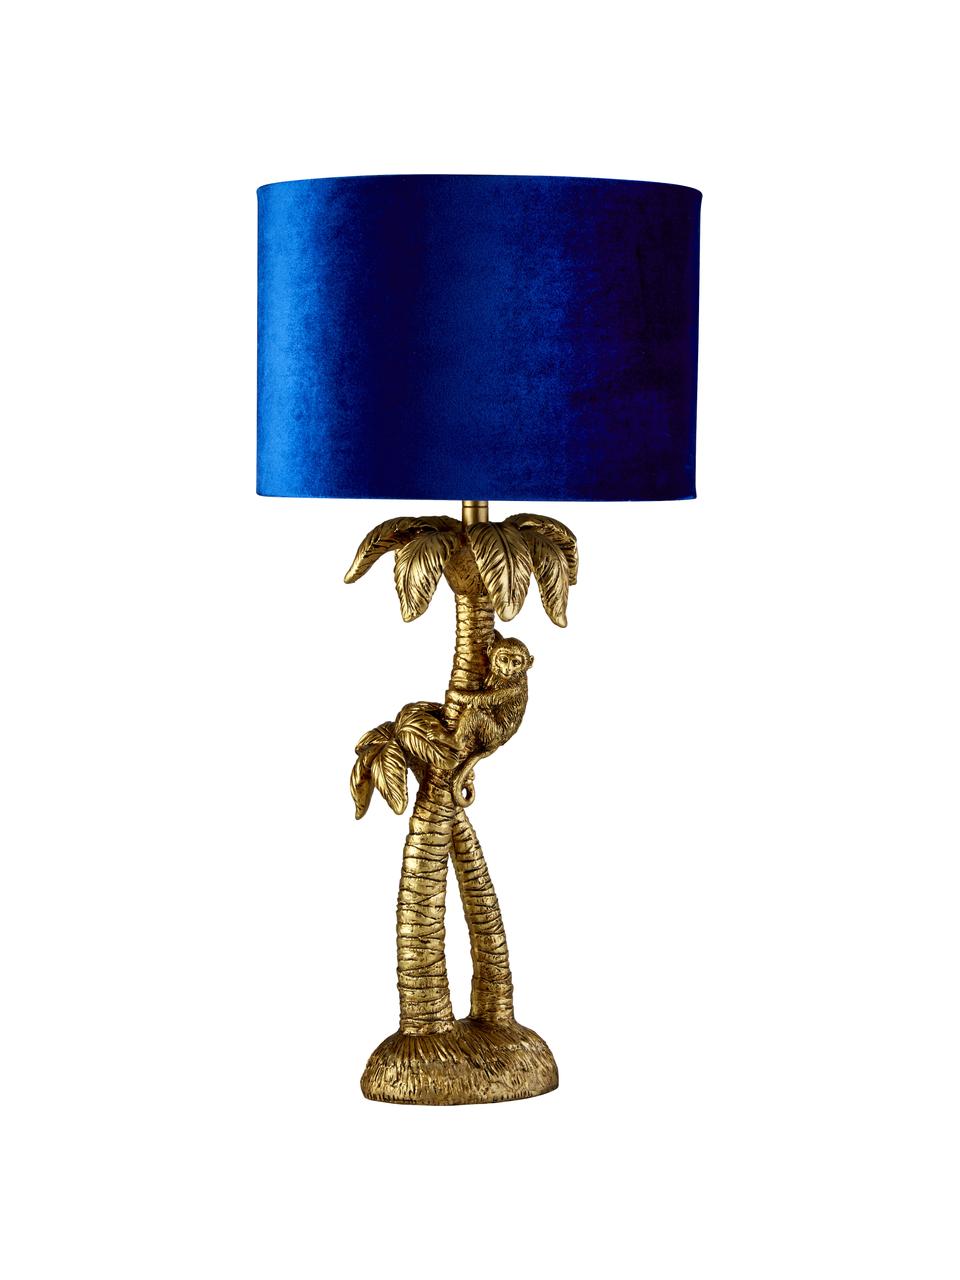 Tischlampe Palmtree mit Samtschirm, Lampenschirm: Samt, Lampenfuß: Polyresin, Blau, Goldfarben, Ø 23 x H 47 cm